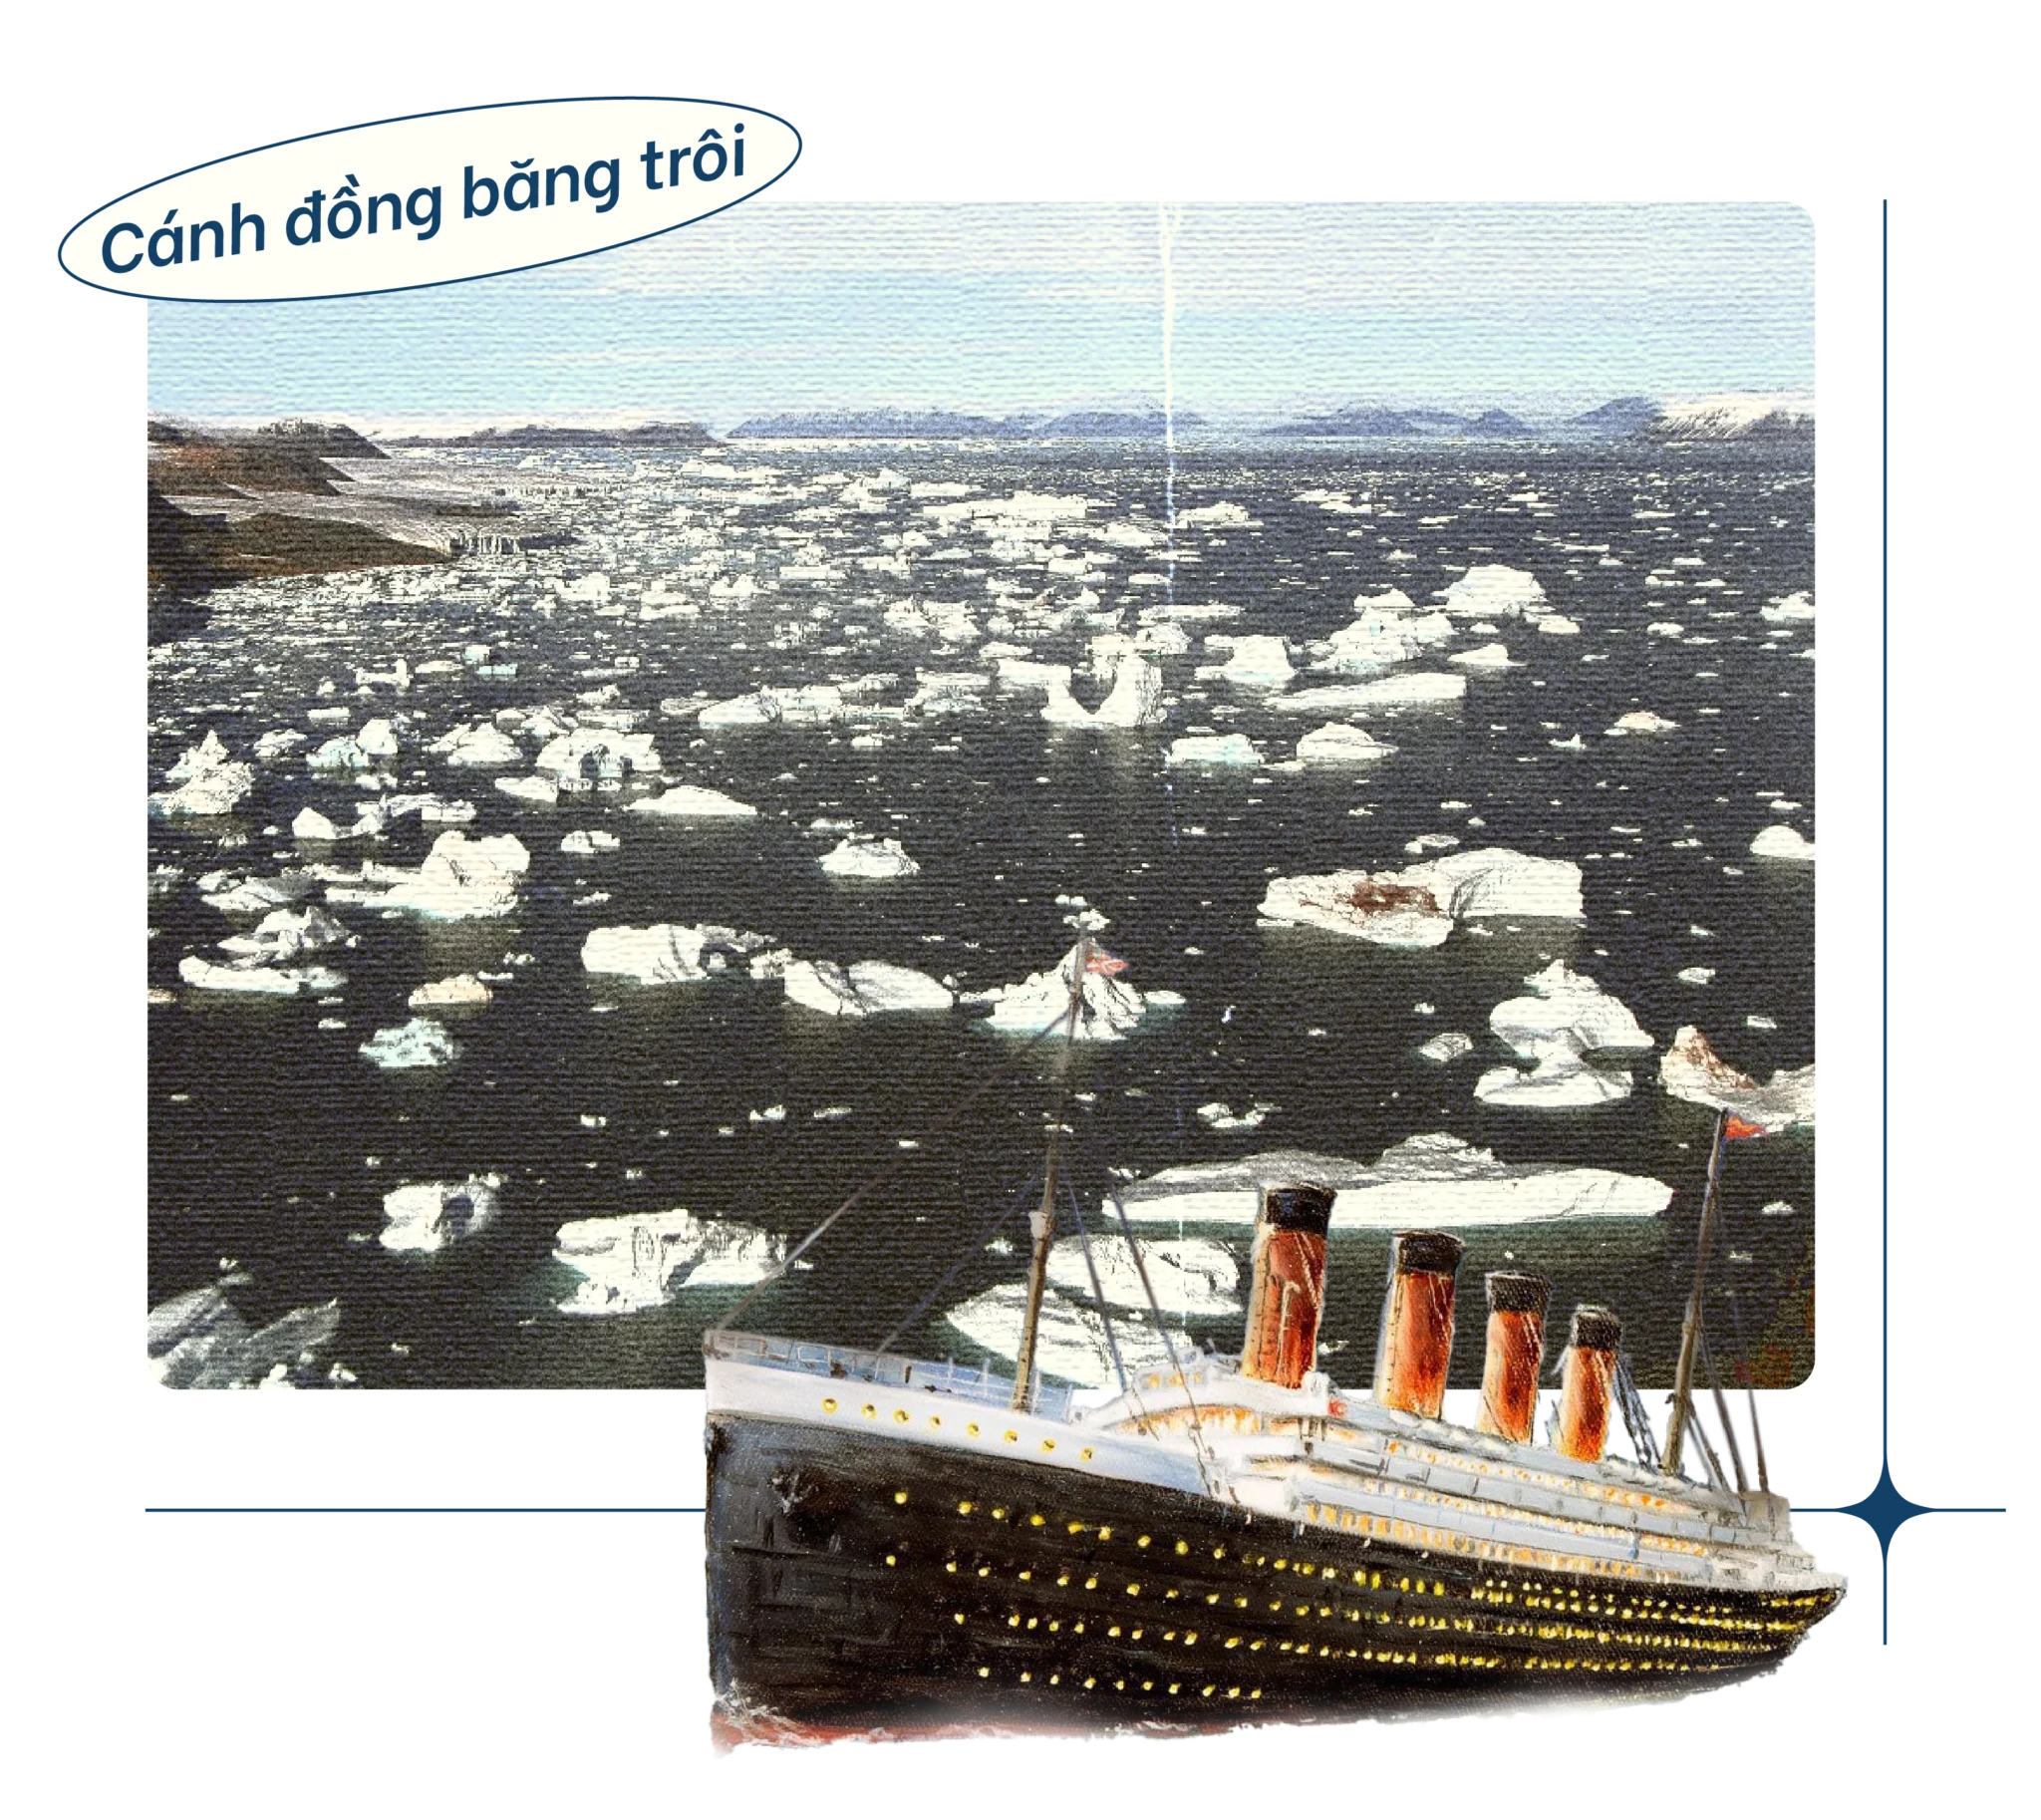 Titanic cánh đồng băng trôi